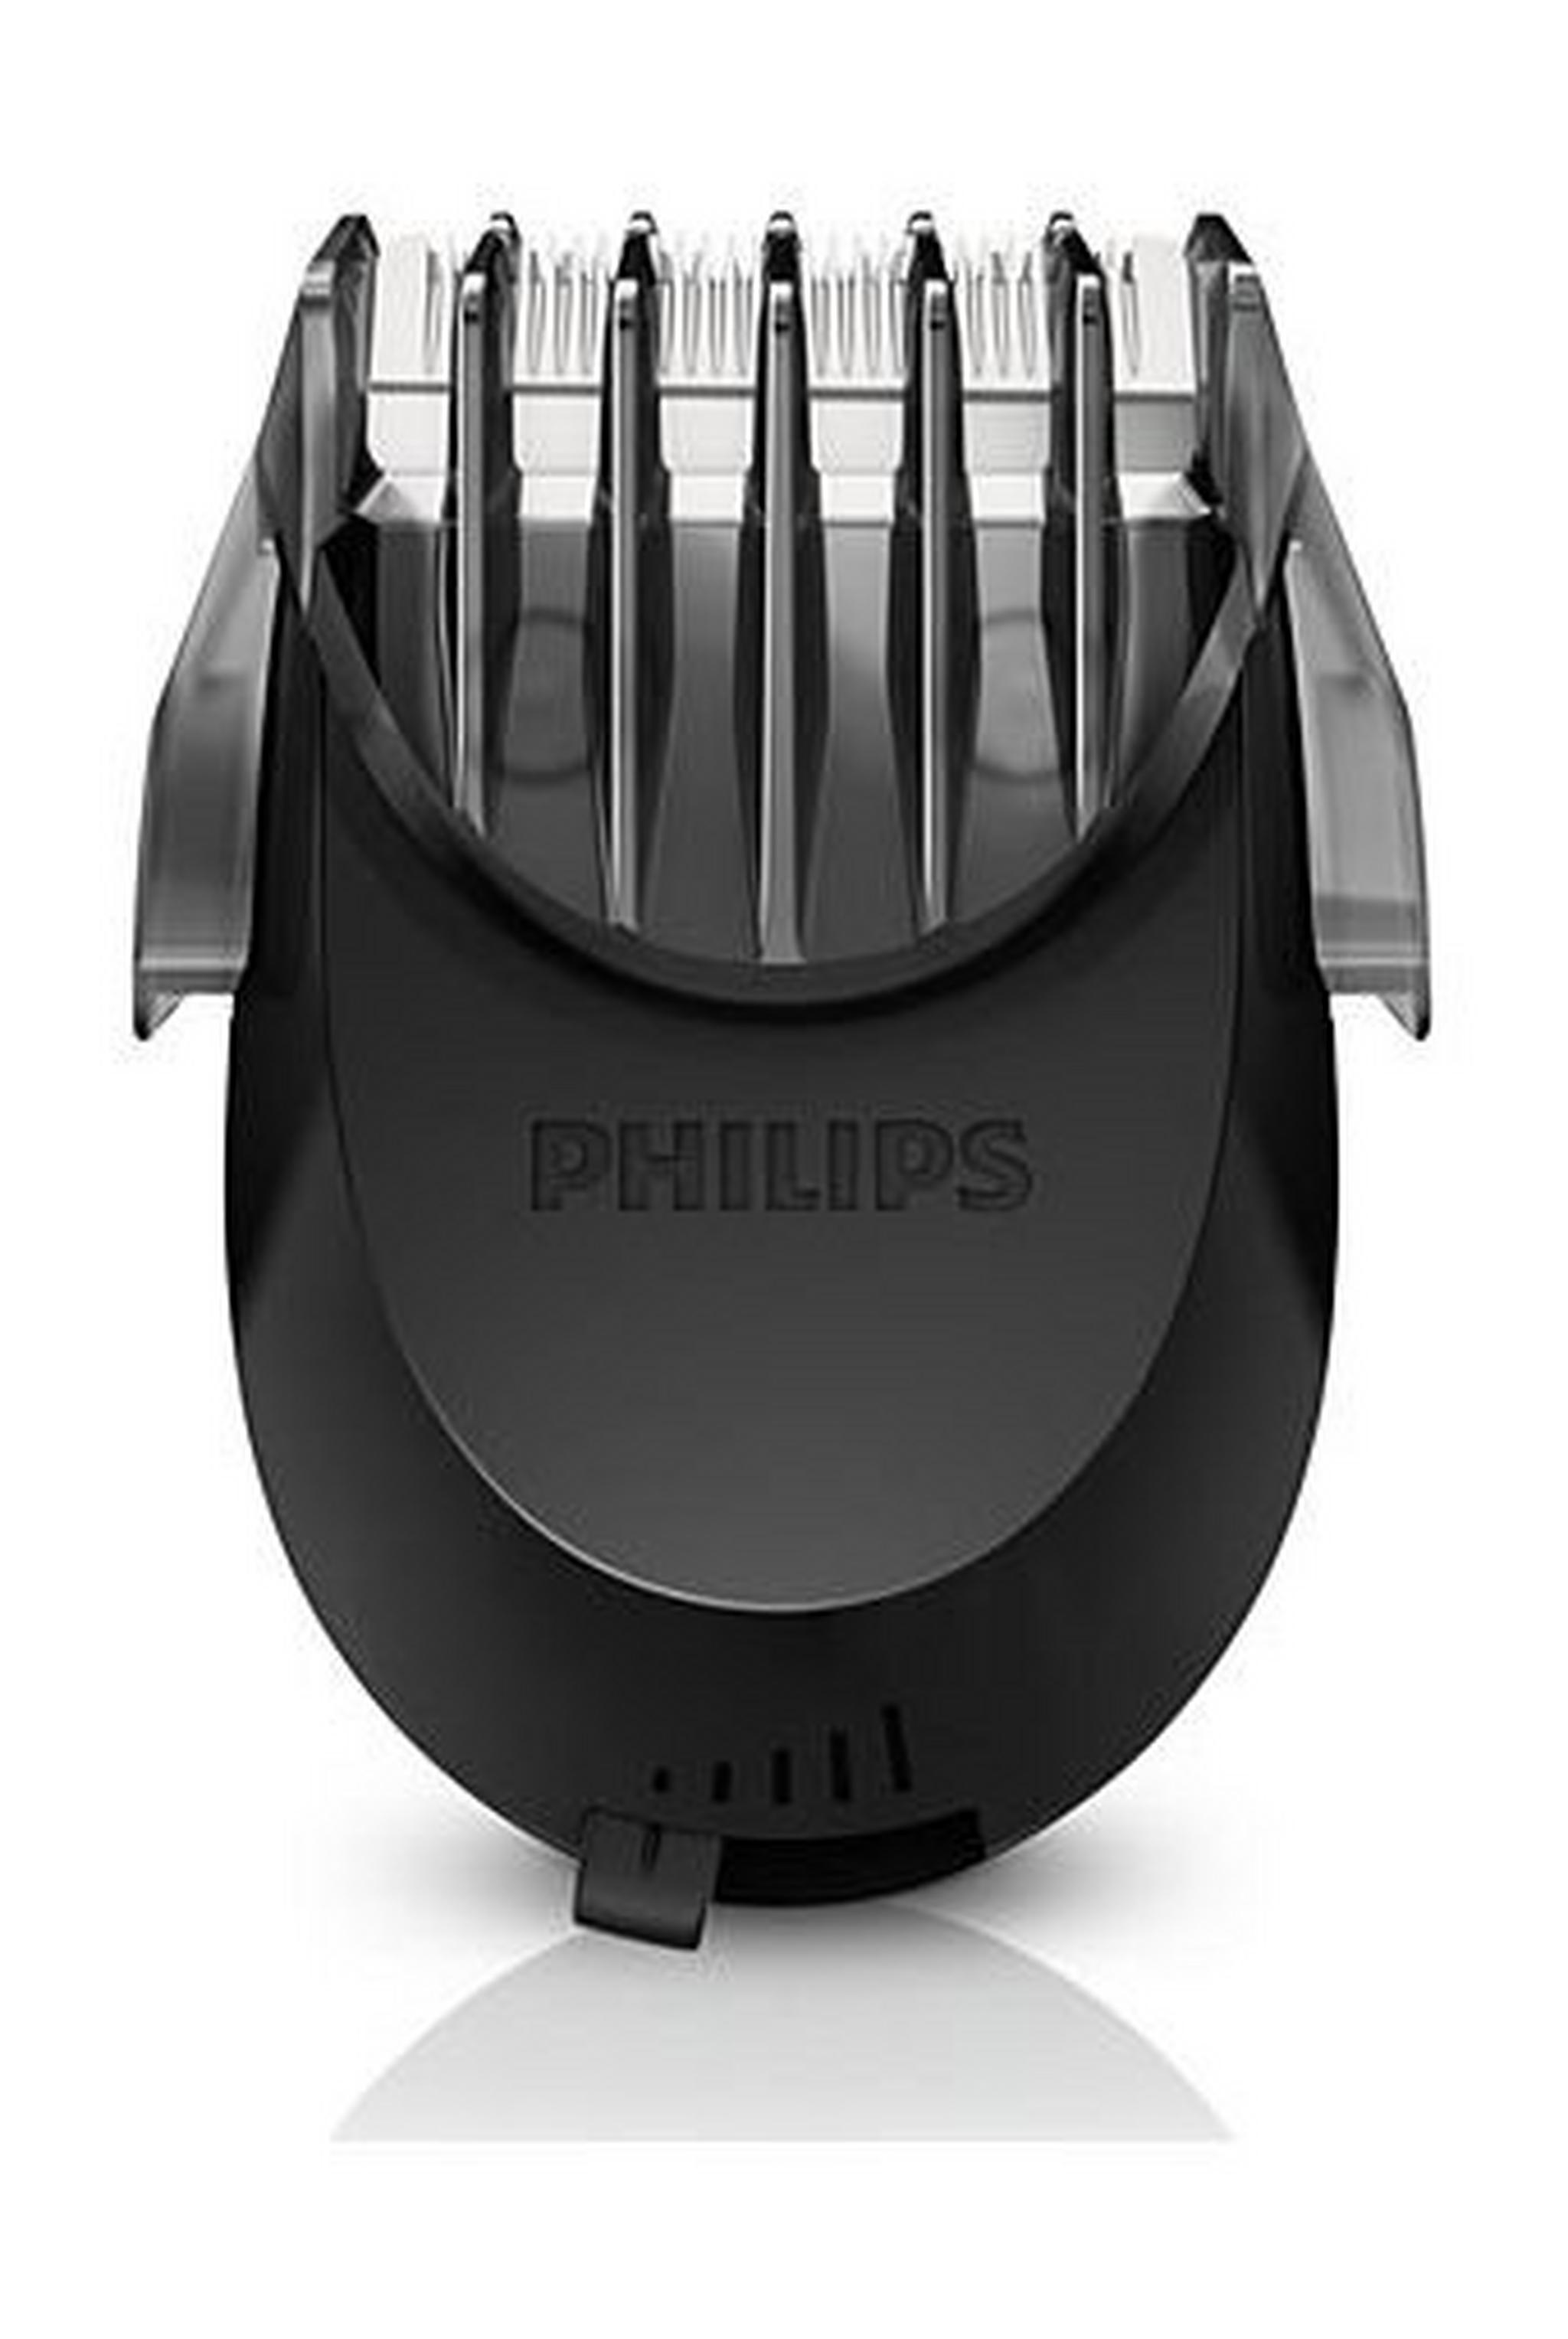 ماكينة حلاقة الشعر الذكية أكواتك من فيليبس ـ أسود/بنفسجي ـ (S9171/23)